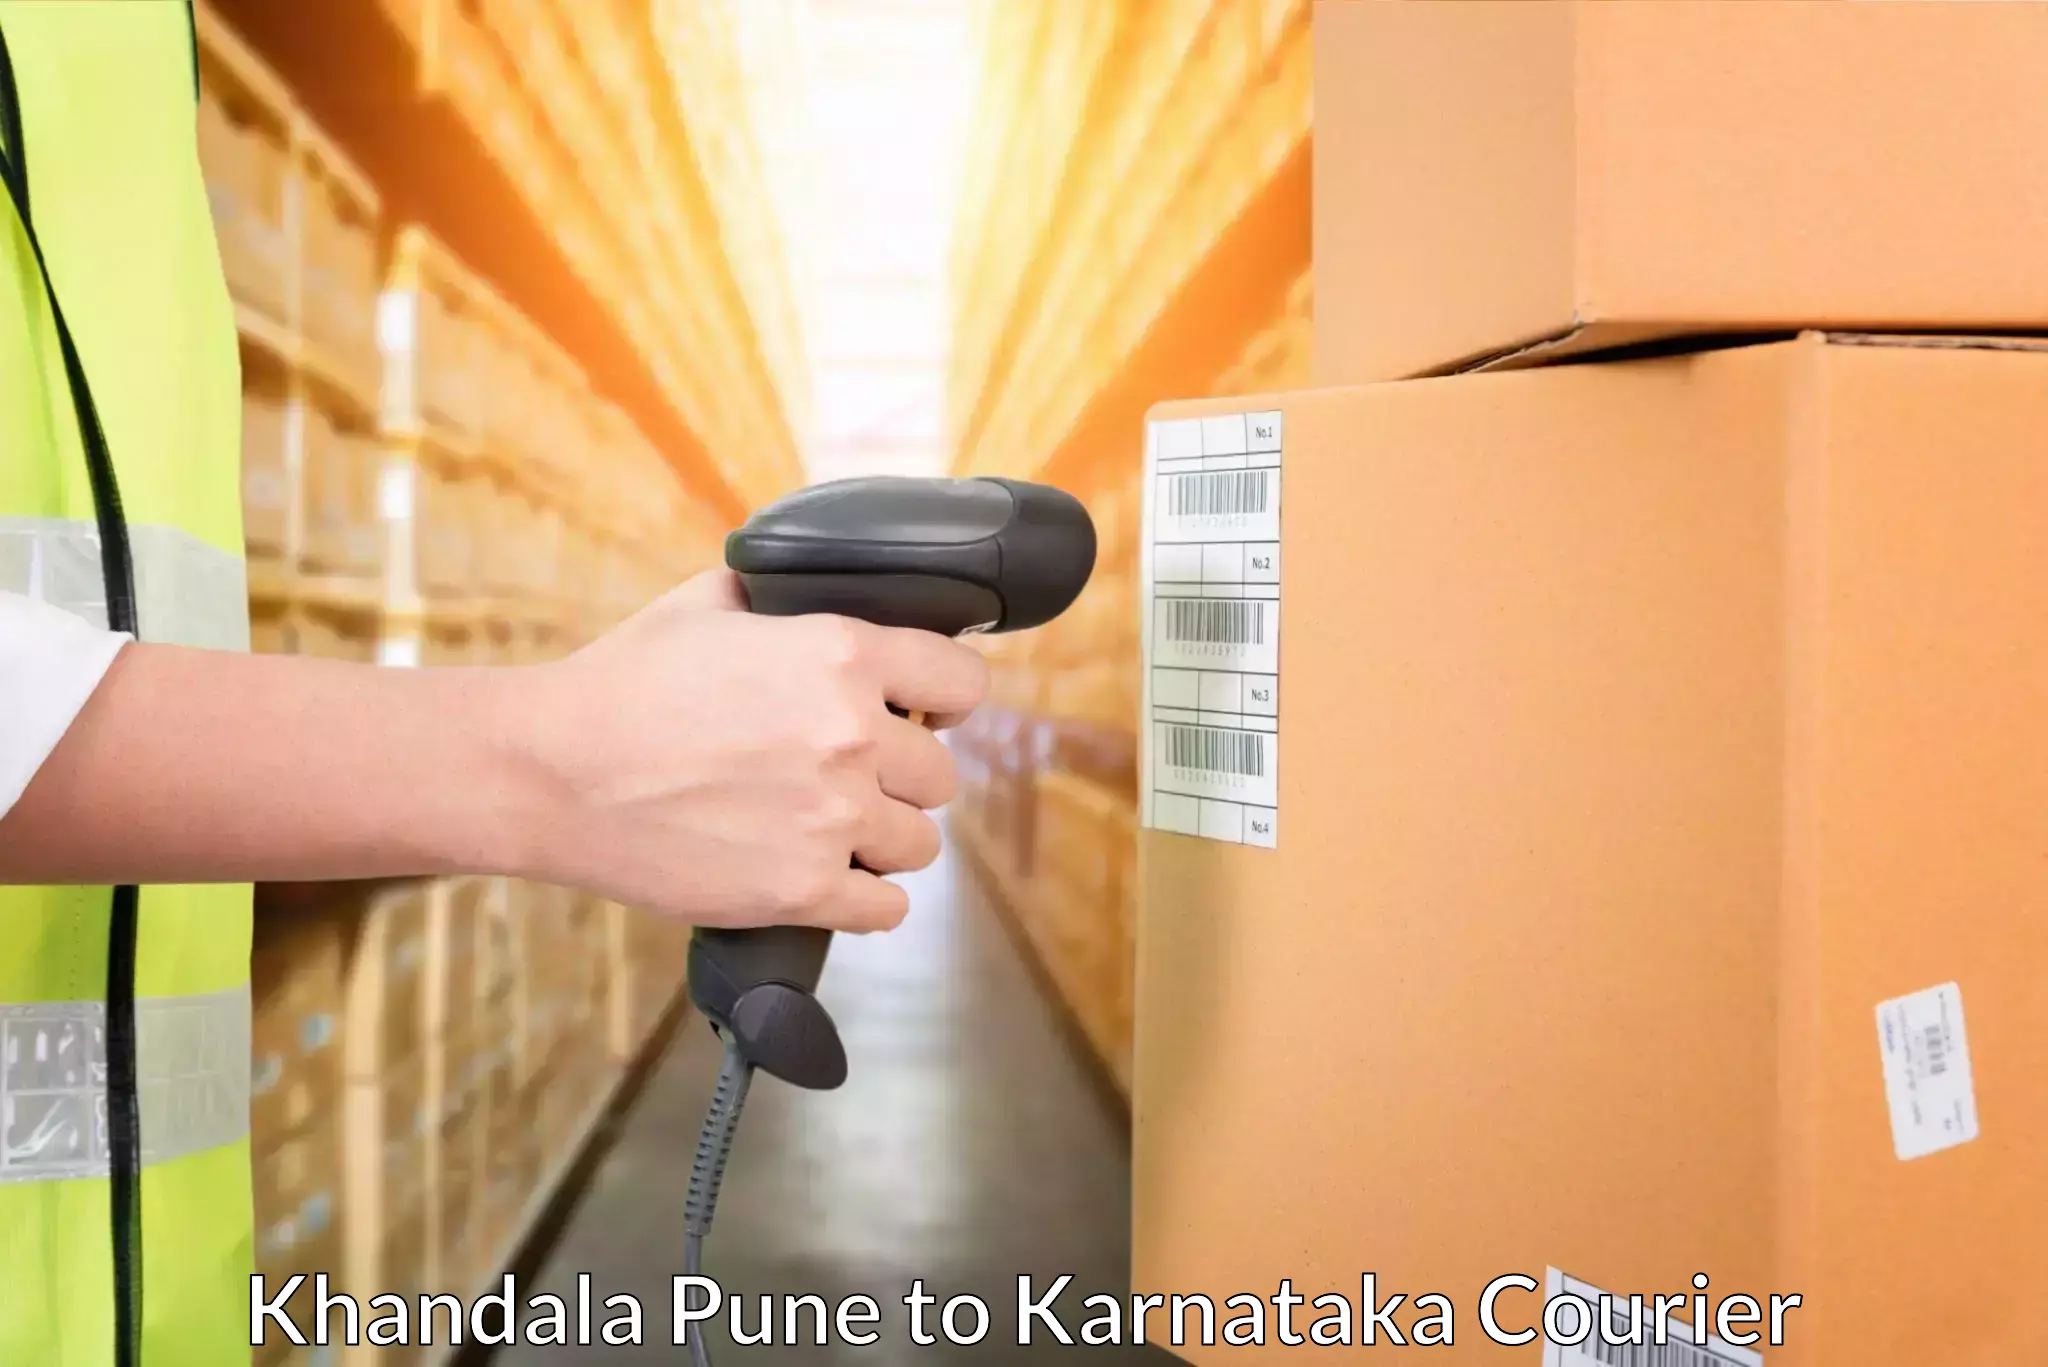 Tailored shipping plans Khandala Pune to Hoovina Hadagali